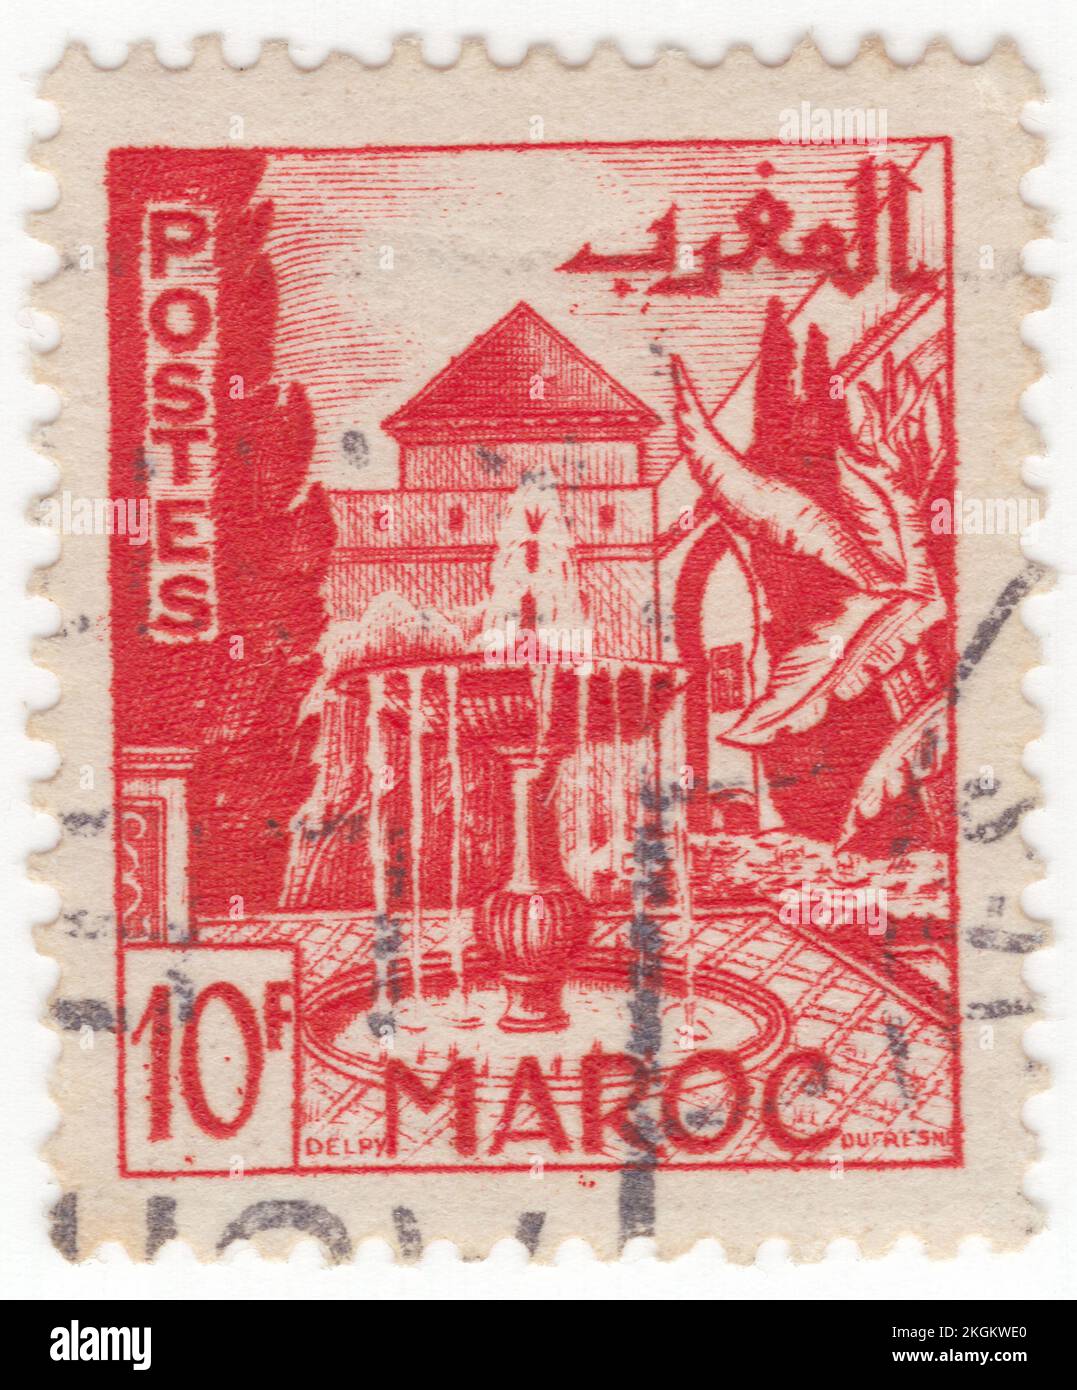 MARRUECOS FRANCÉS - 1949: Un sello de 10 francos de color rojo brillante que representa Jardín, Meknes, es una de las cuatro ciudades imperiales de Marruecos, situada en el centro norte de Marruecos y la sexta ciudad por población en el reino. Fundada en el siglo 11th por los almorávides como asentamiento militar, Meknes se convirtió en la capital de Marruecos bajo el reinado del sultán Moulay Ismail (1672-1727), hijo del fundador de la dinastía alauita. Moulay Ismail creó un enorme complejo palaciego imperial y dotó a la ciudad de extensas fortificaciones y puertas monumentales Foto de stock